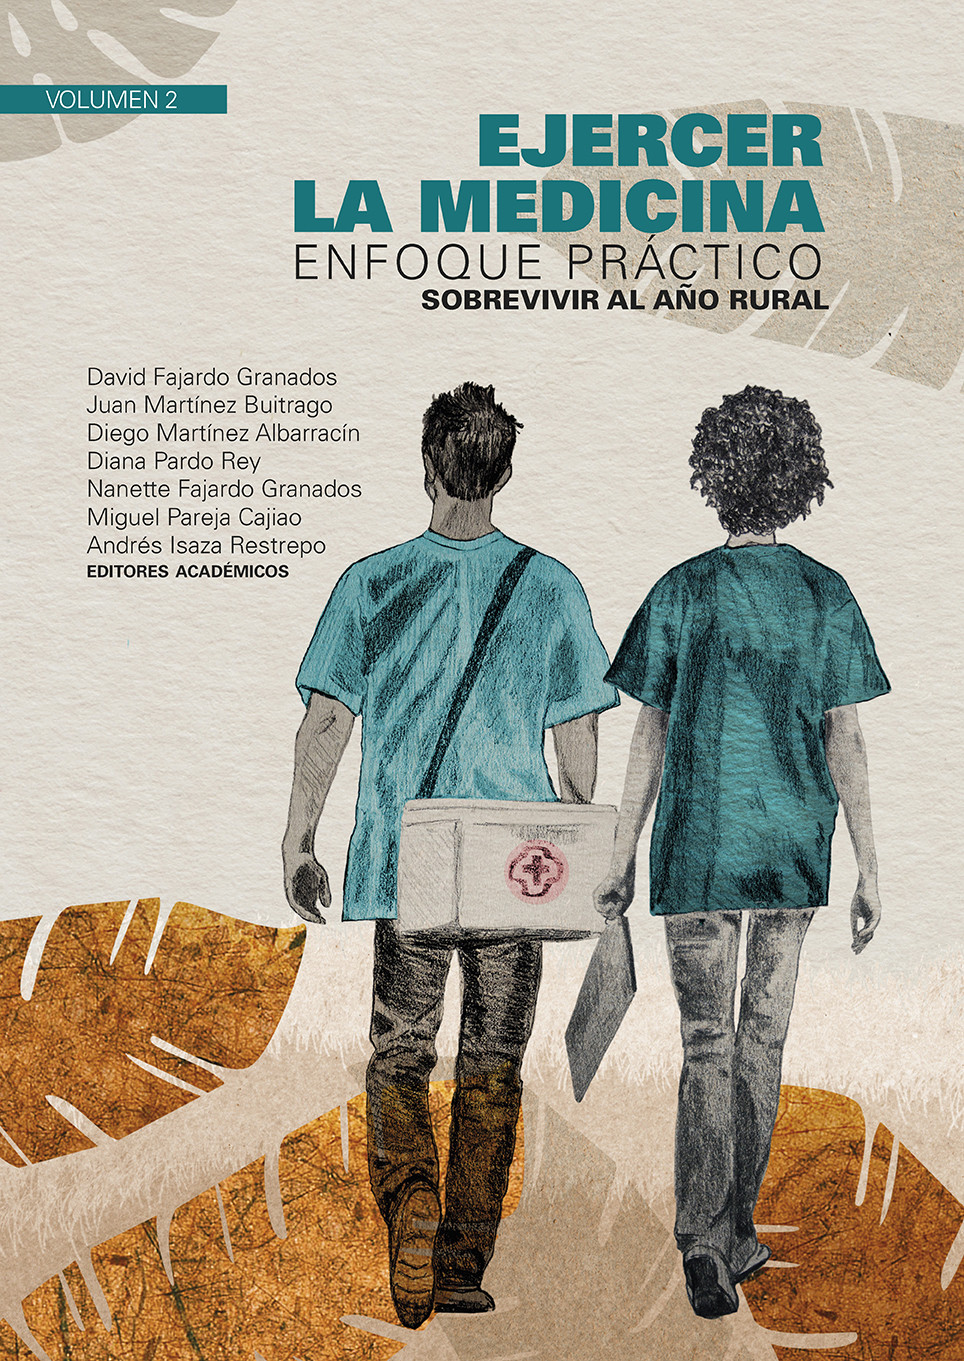 Imagen de portada del libro Ejercer la medicina enfoque práctico